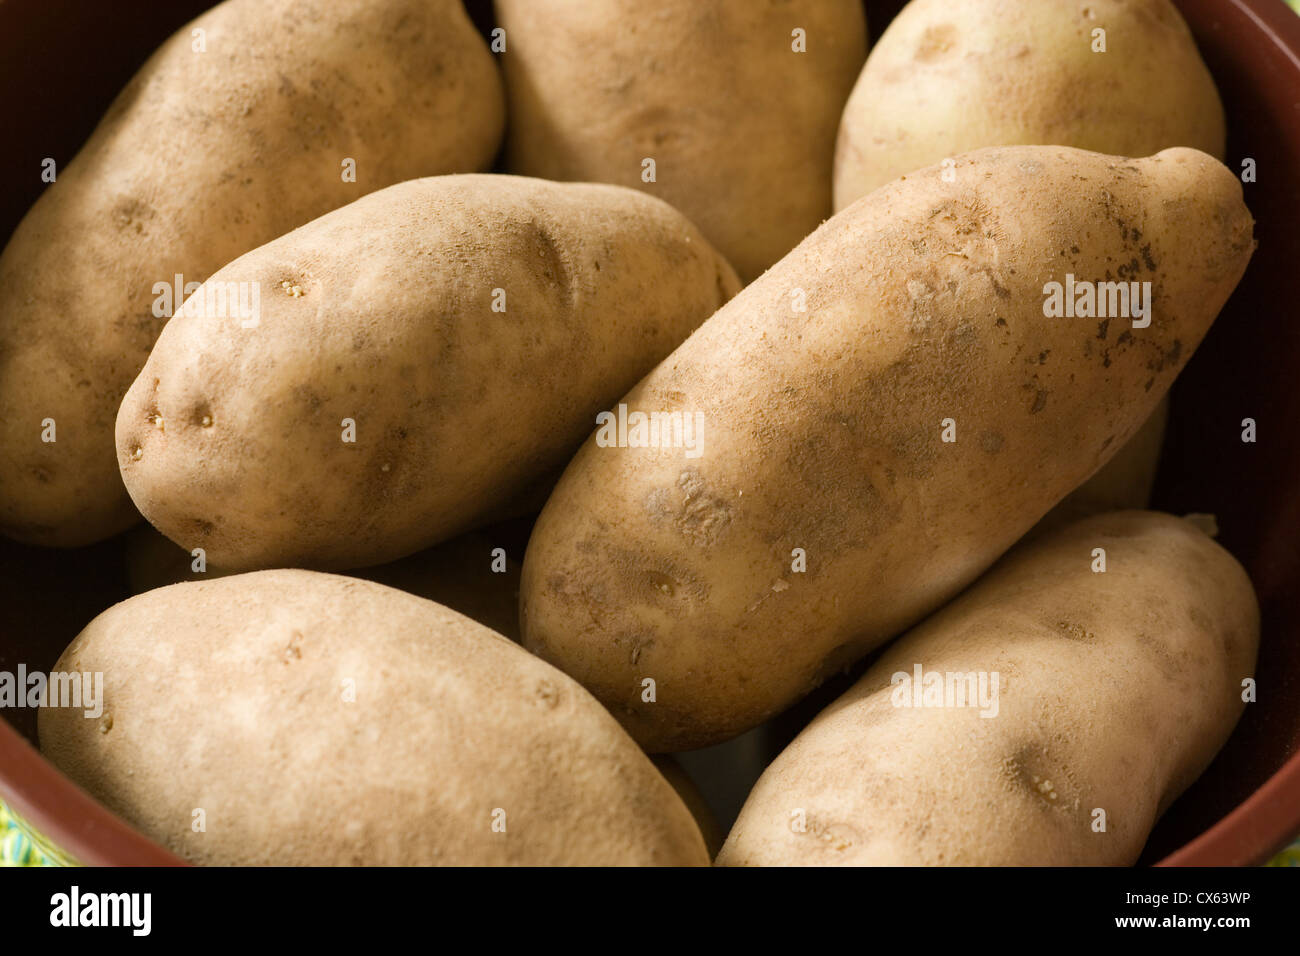 Ensemble, les matières, les pommes de terre roussâtres Banque D'Images